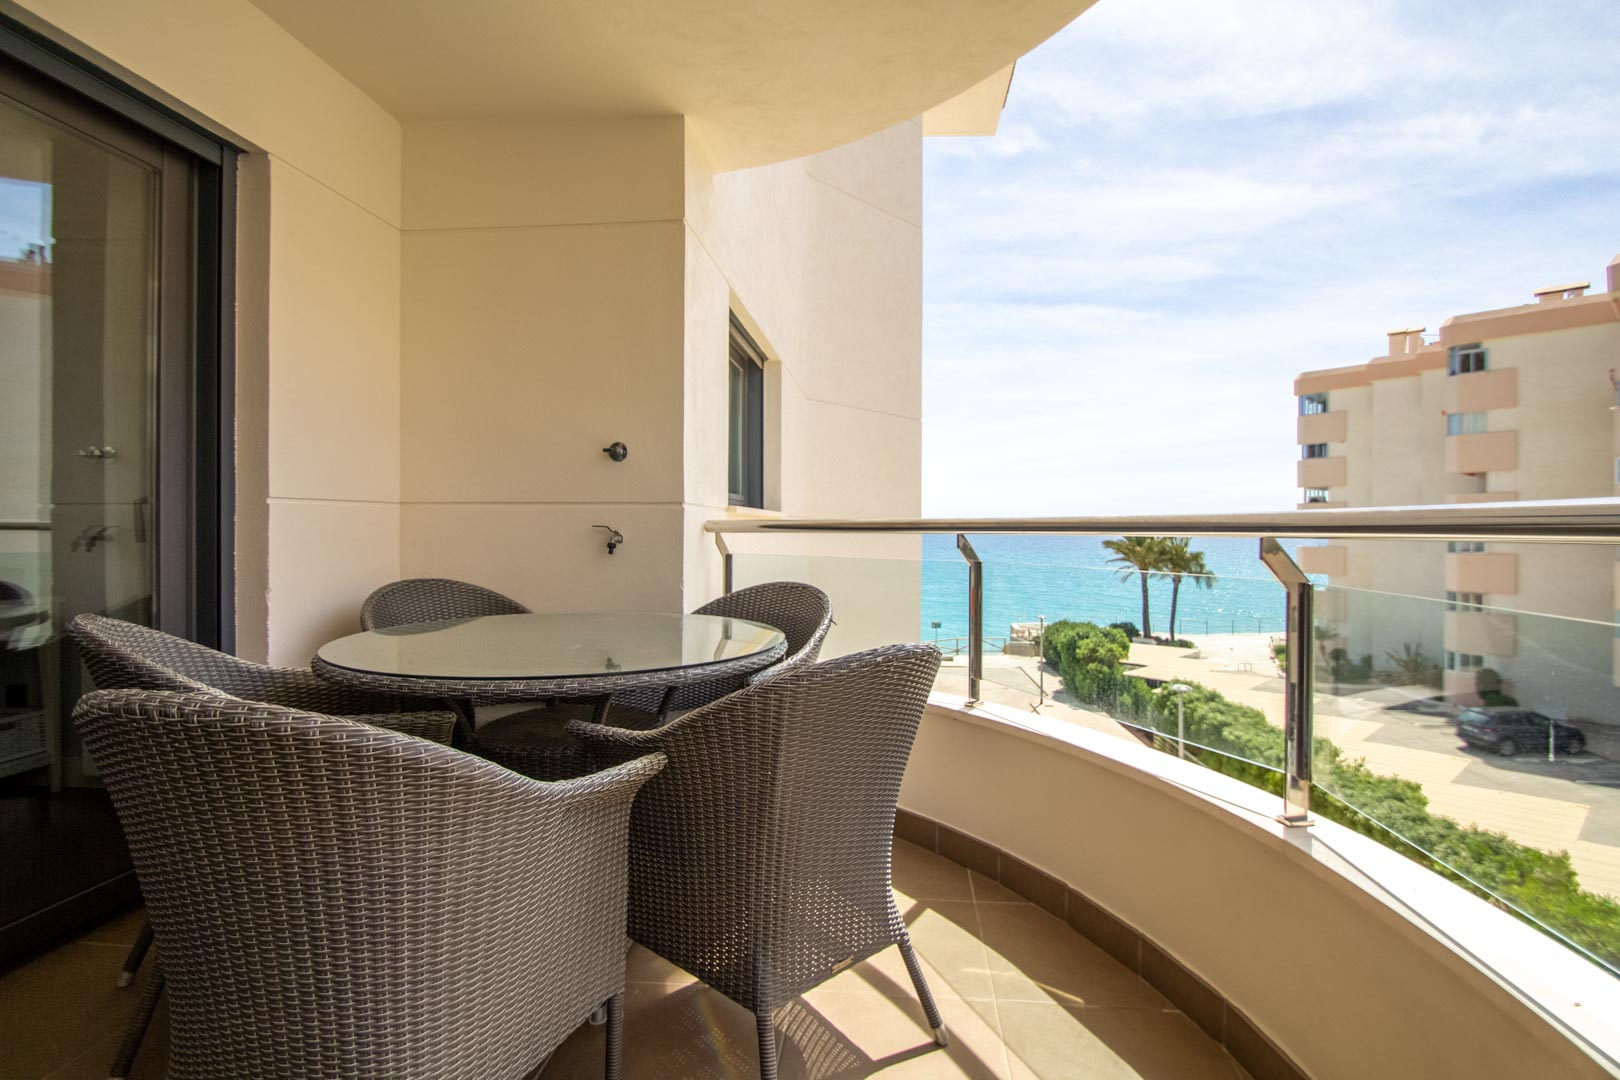 Precioso apartamento en zona Cap Negret con vistas al mar